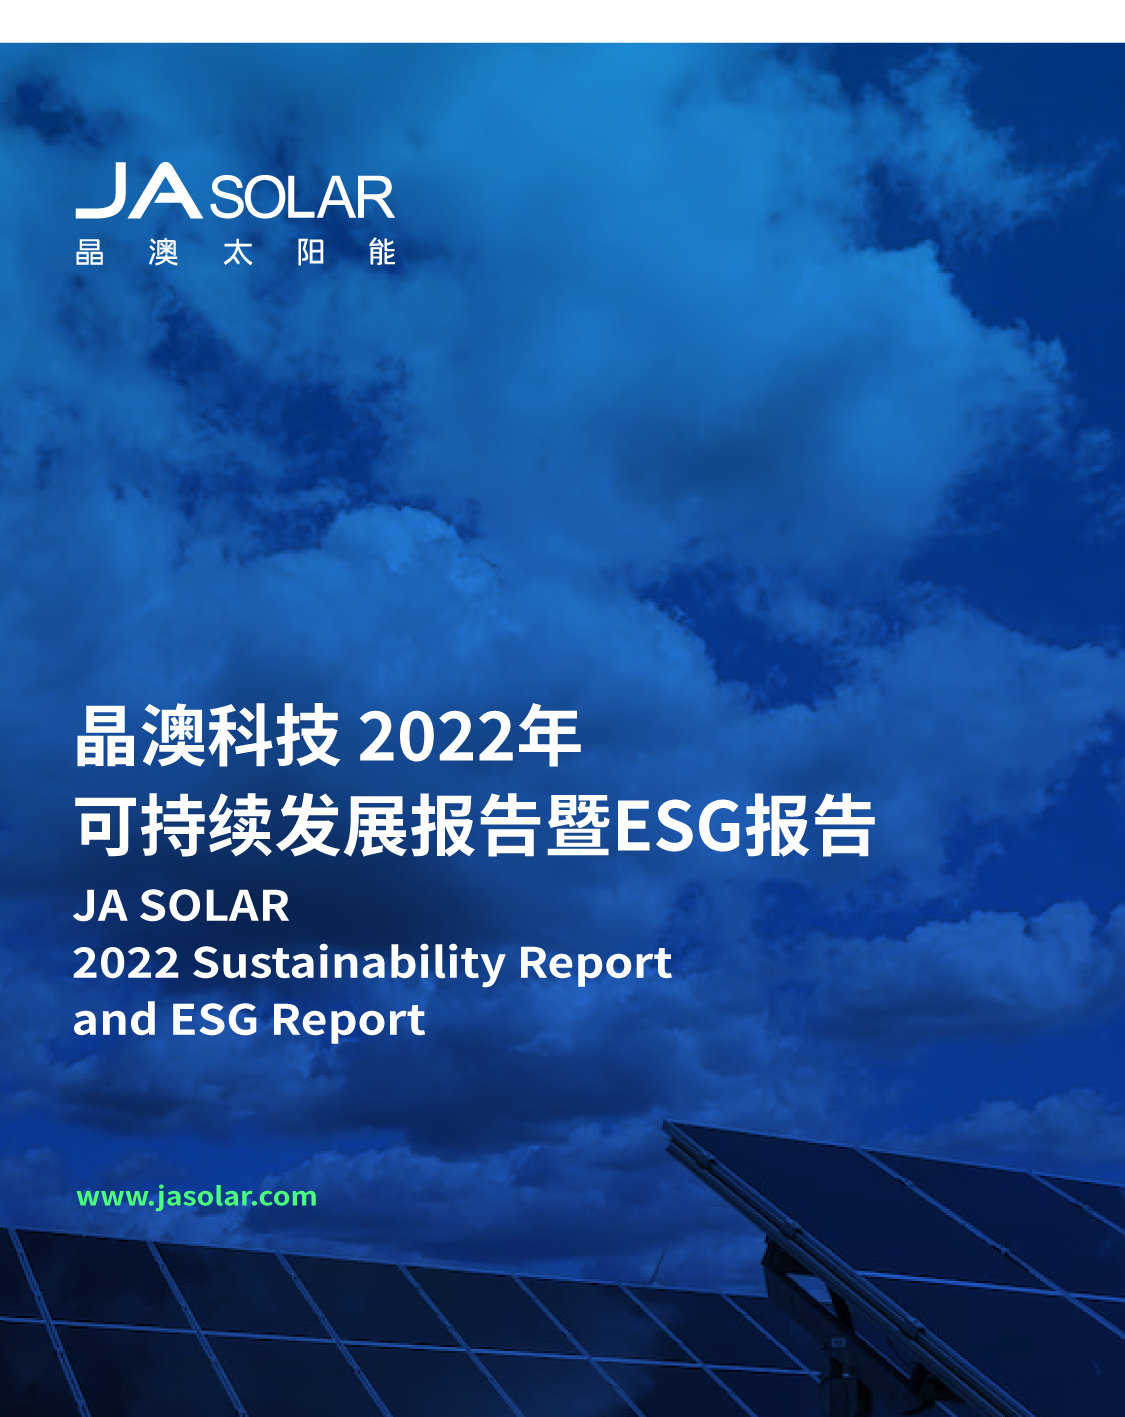 重磅发布丨一图看懂晶澳科技2022年可持续发展报告暨ESG报告